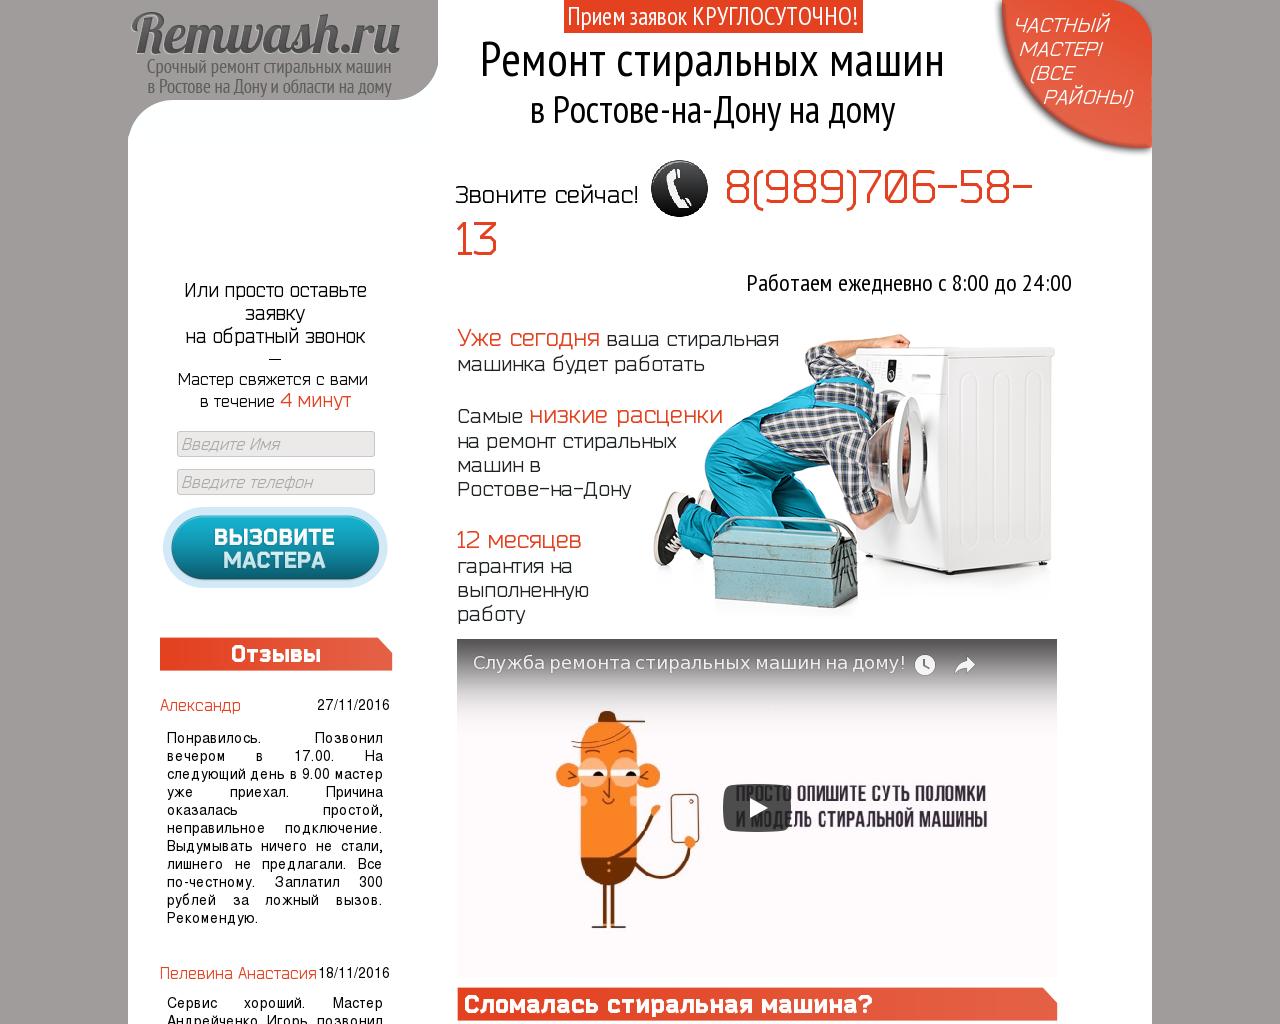 Изображение сайта remwash.ru в разрешении 1280x1024